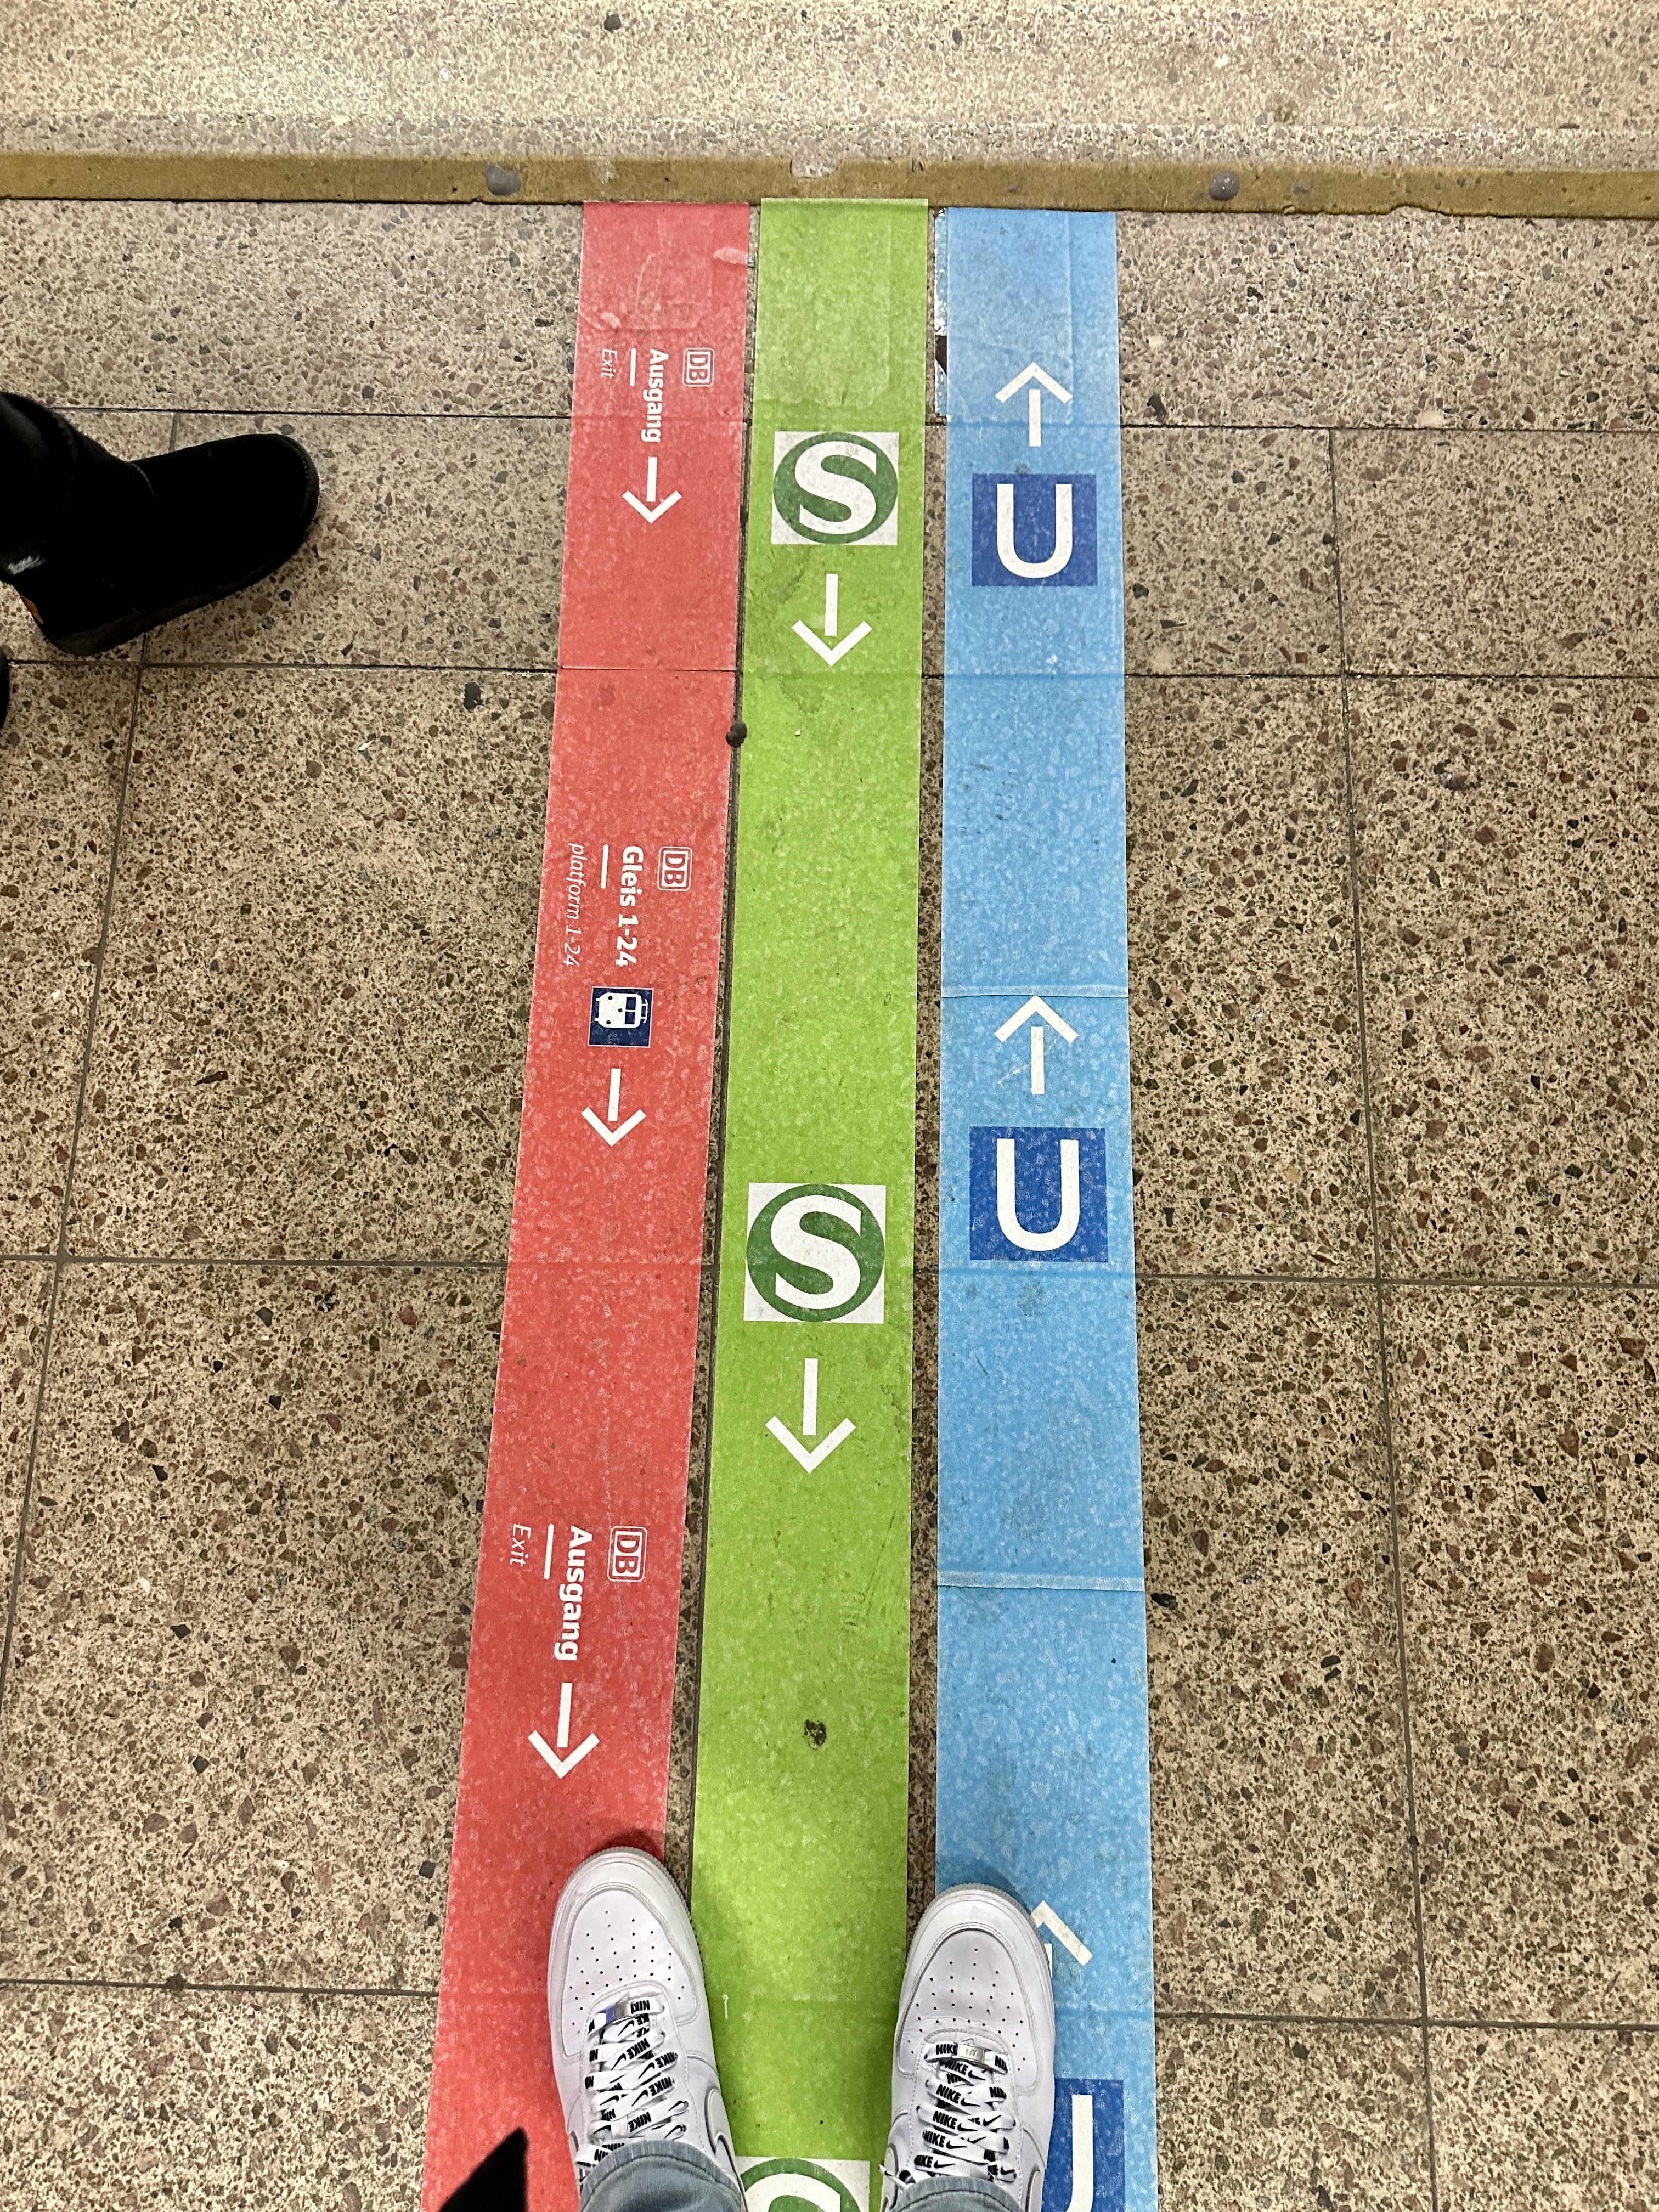 독일의 지하철 S반과 U반